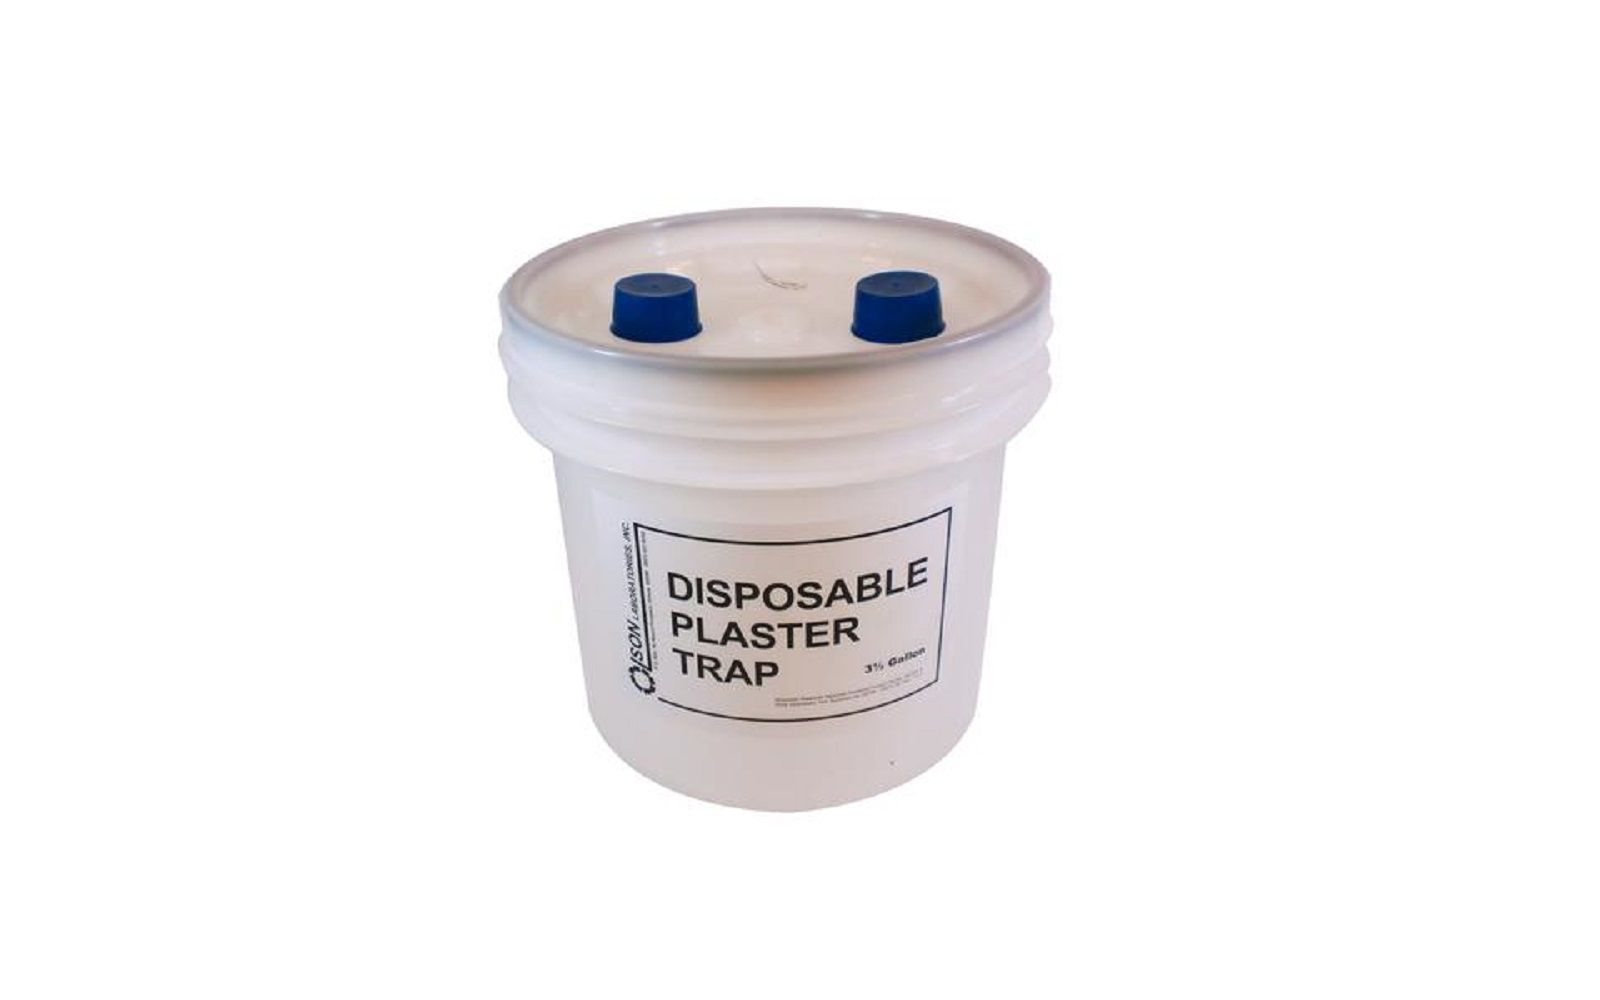 Disposable plaster trap – 3. 5 gallon container refill